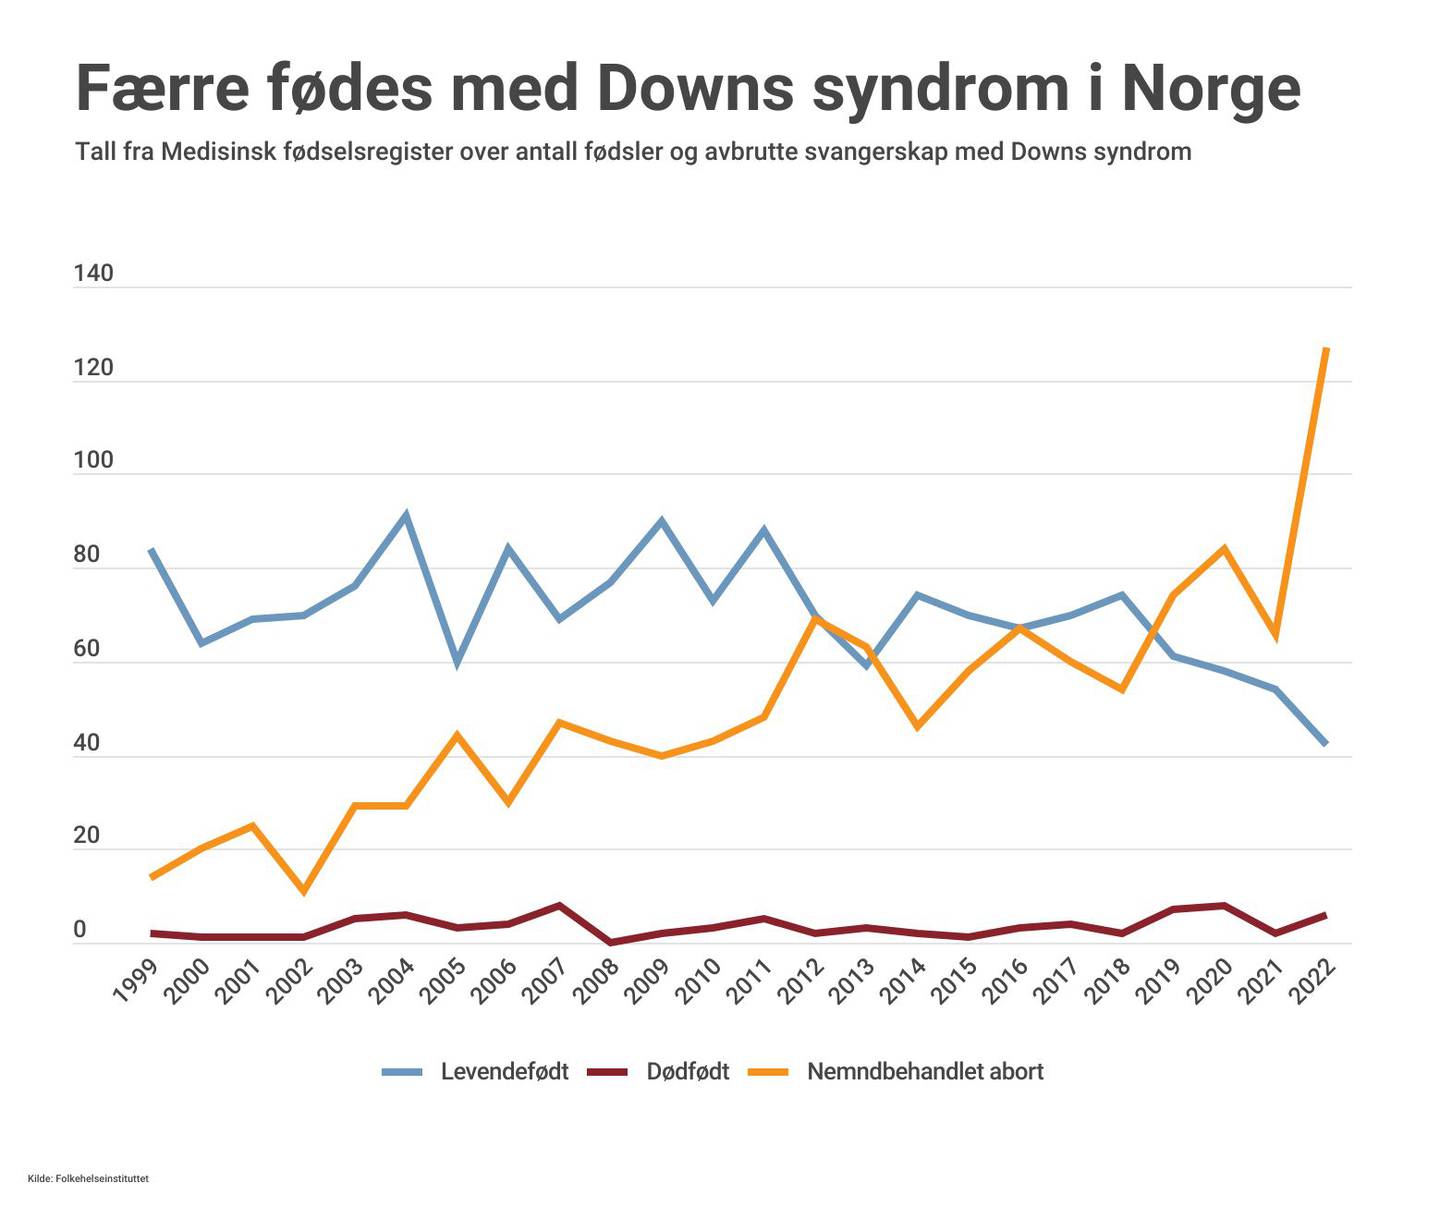 Færre fødes med Downs syndrom i Norge